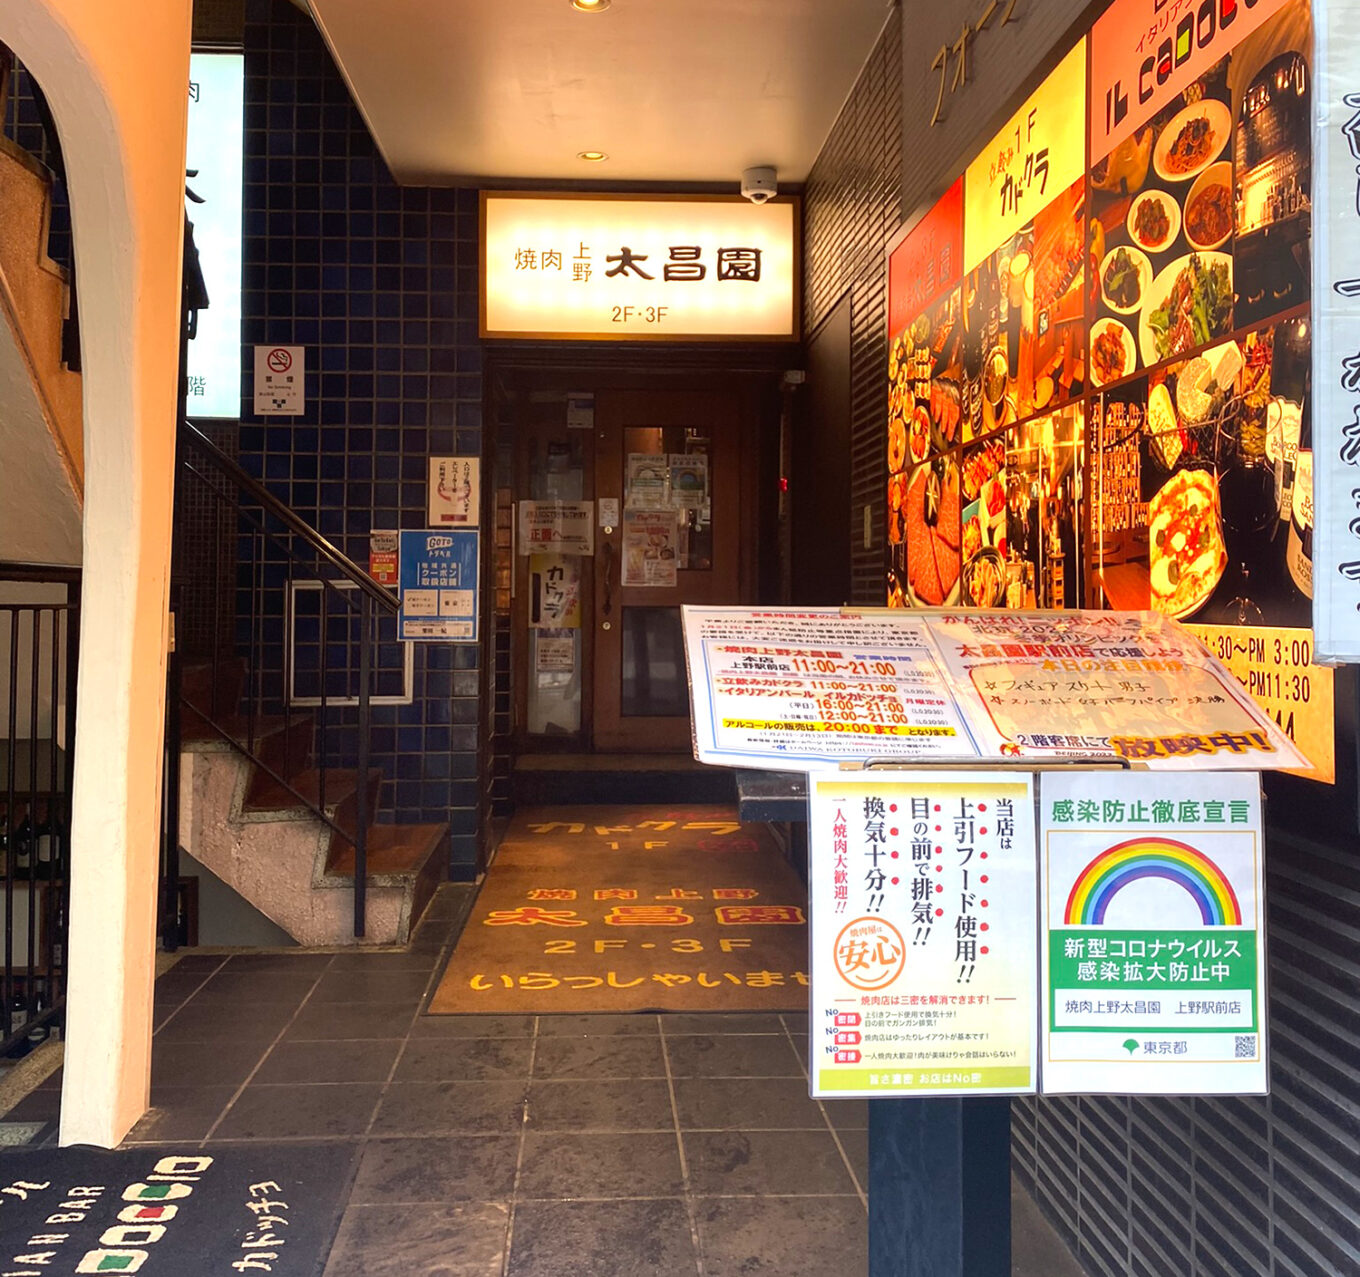 上野 太昌園 上野駅前店 焼肉ランチで美味しい昼飲み 立ち飲み屋2階の老舗焼肉店 せんべろnet